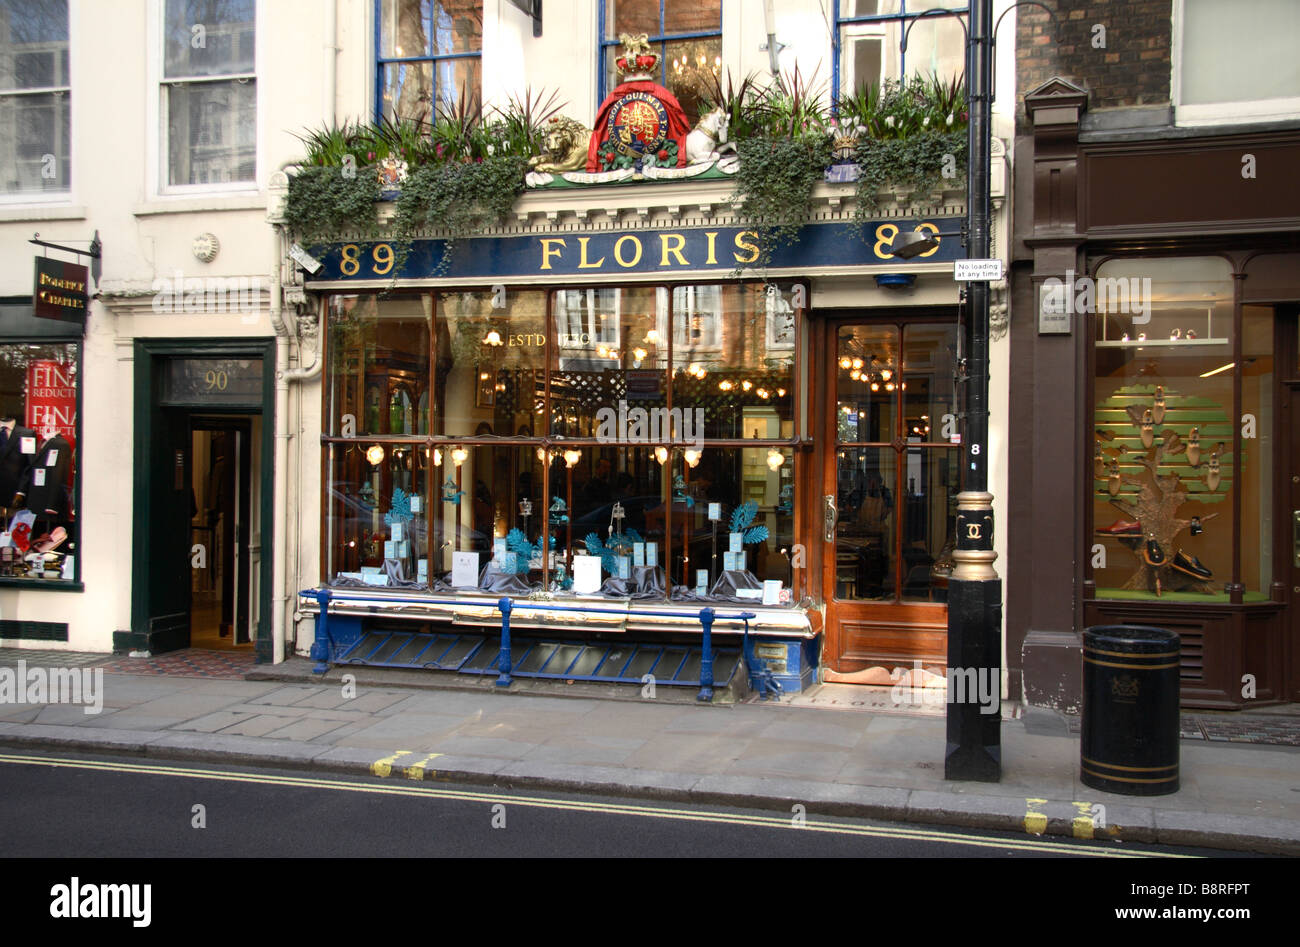 L'avant de la boutique magasin de parfums Floris, Londres. Feb 2009 Banque D'Images